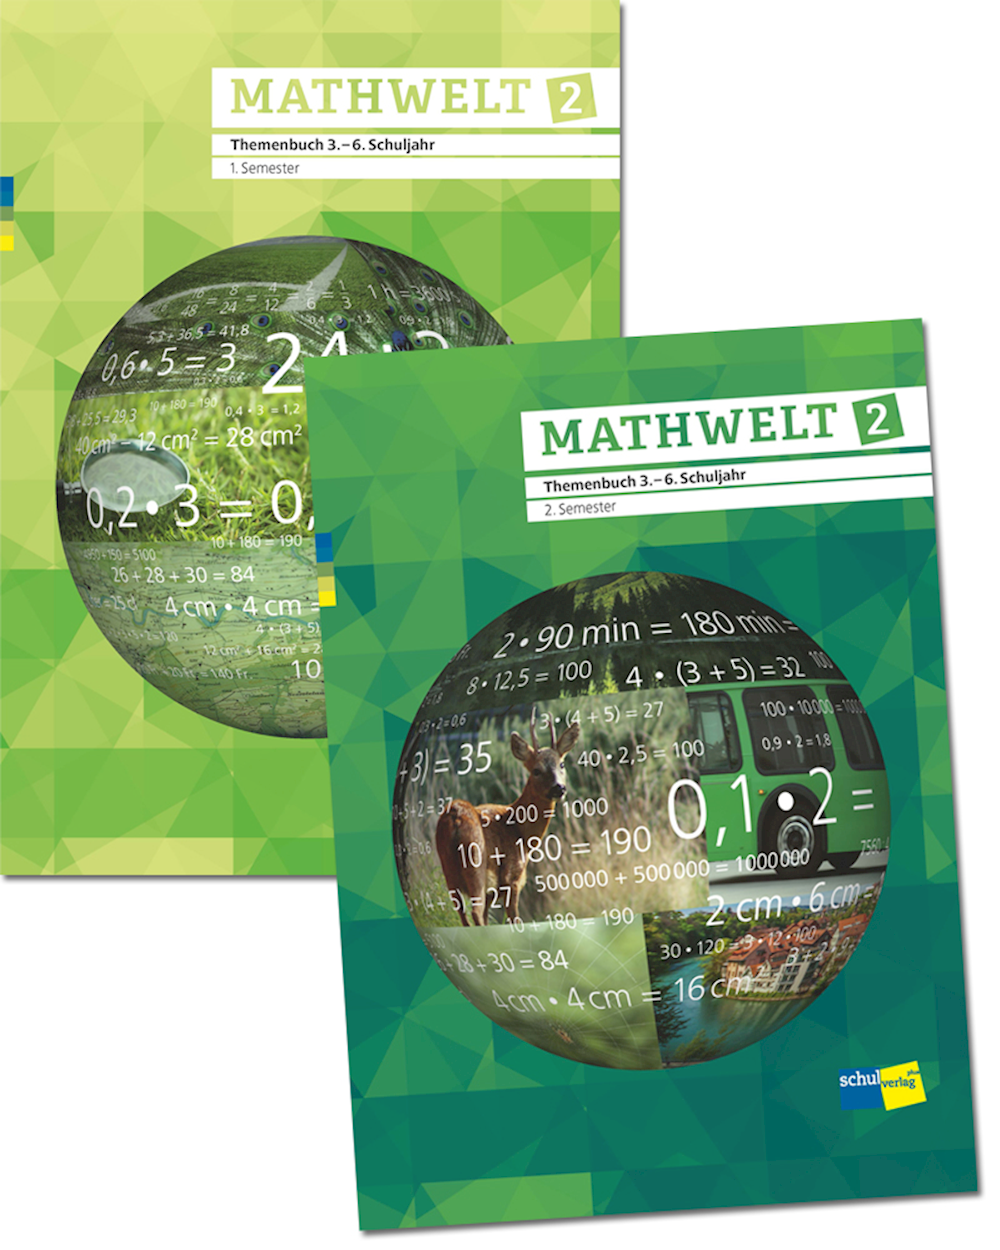 Mathwelt 2 2 Themenbücher